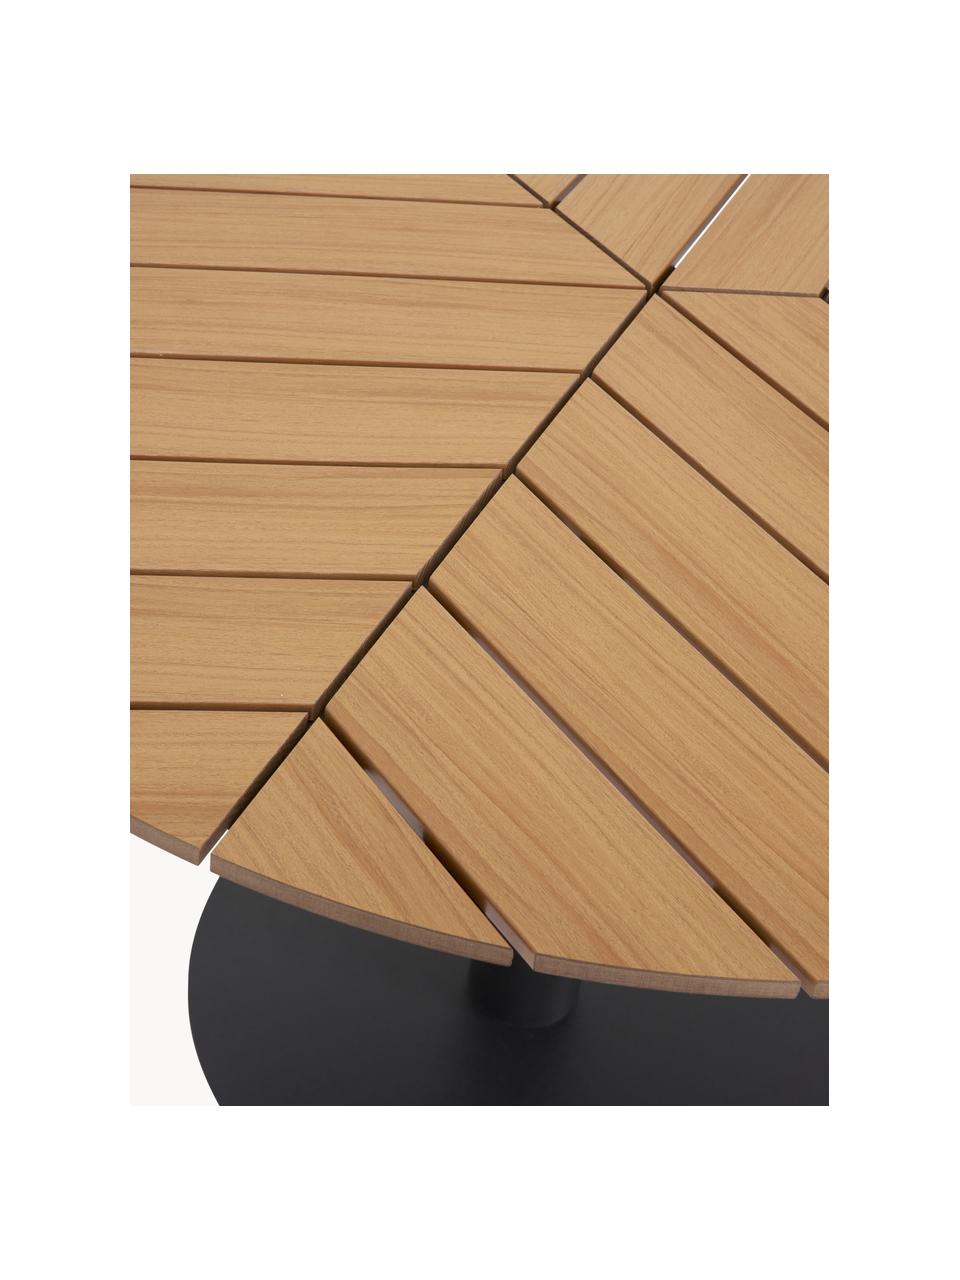 Gartentisch Troy, Tischplatte: Kunststoff, Fuß: Metall, beschichtet, Beige, Holz-Optik, Schwarz, Ø 110 x H 74 cm